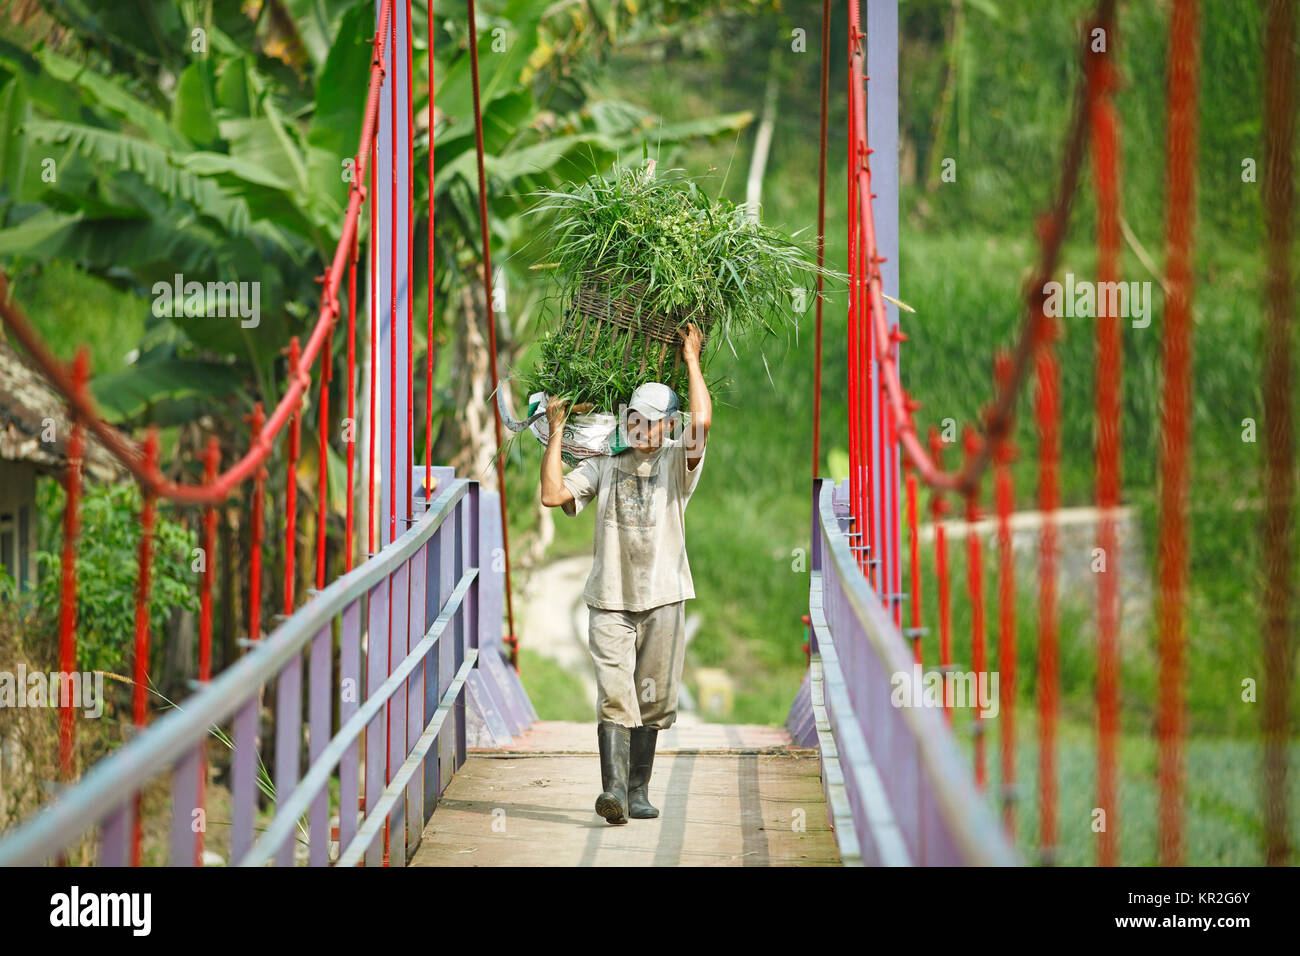 Landwirt schleppt ein Korb voller Gras über eine Hängebrücke, Malang, Java, Indonesien Stockfoto